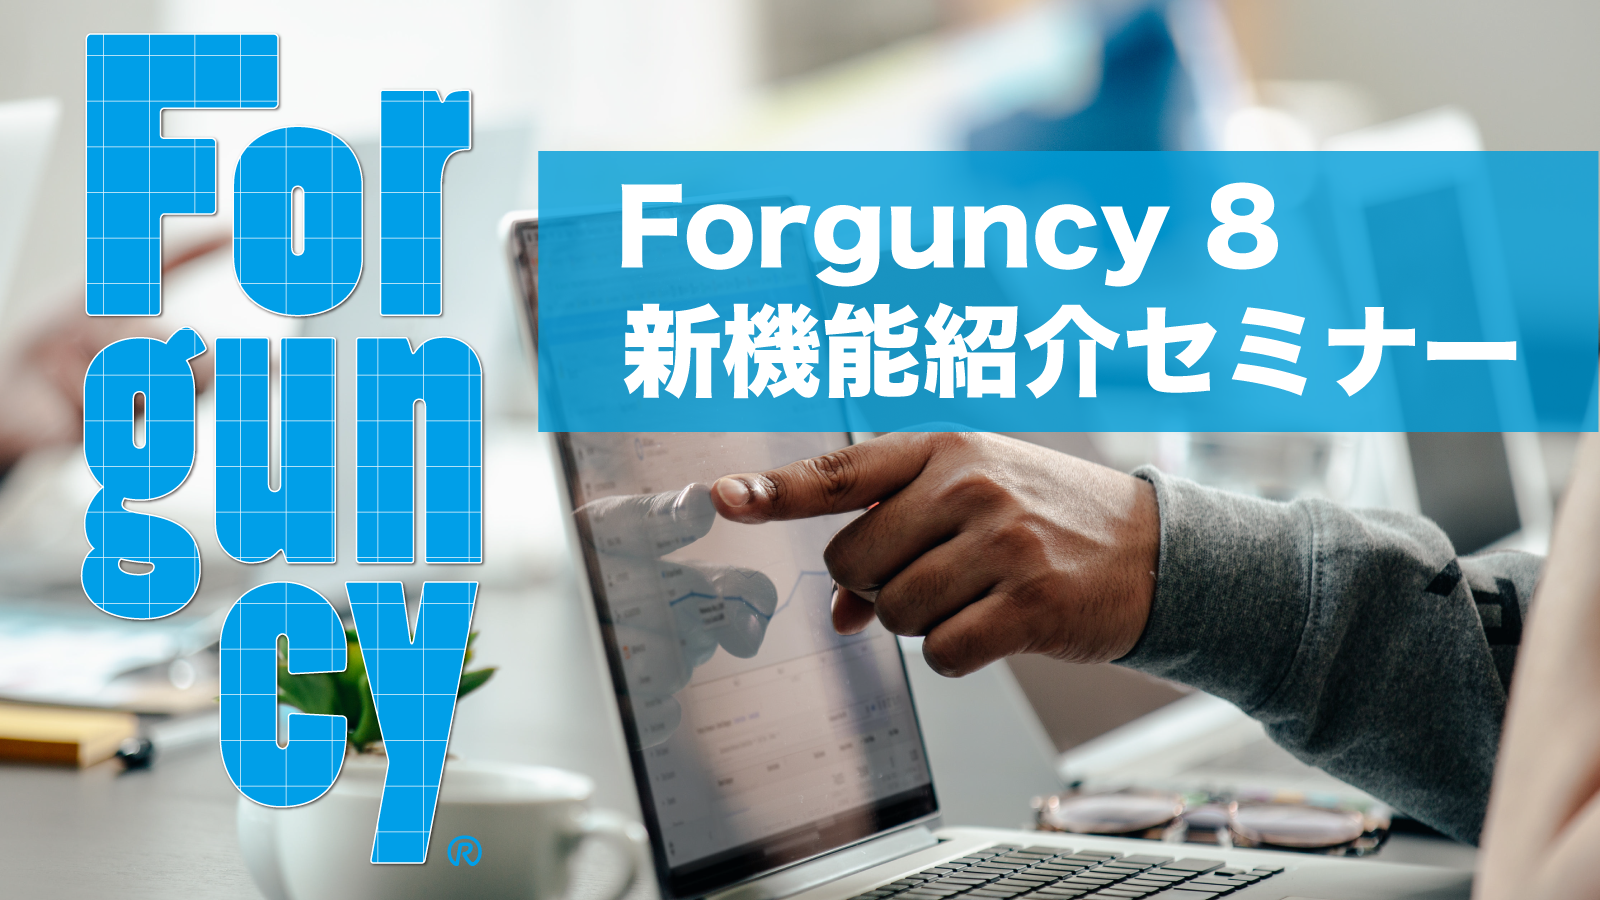 Forguncy 8 新機能紹介セミナー